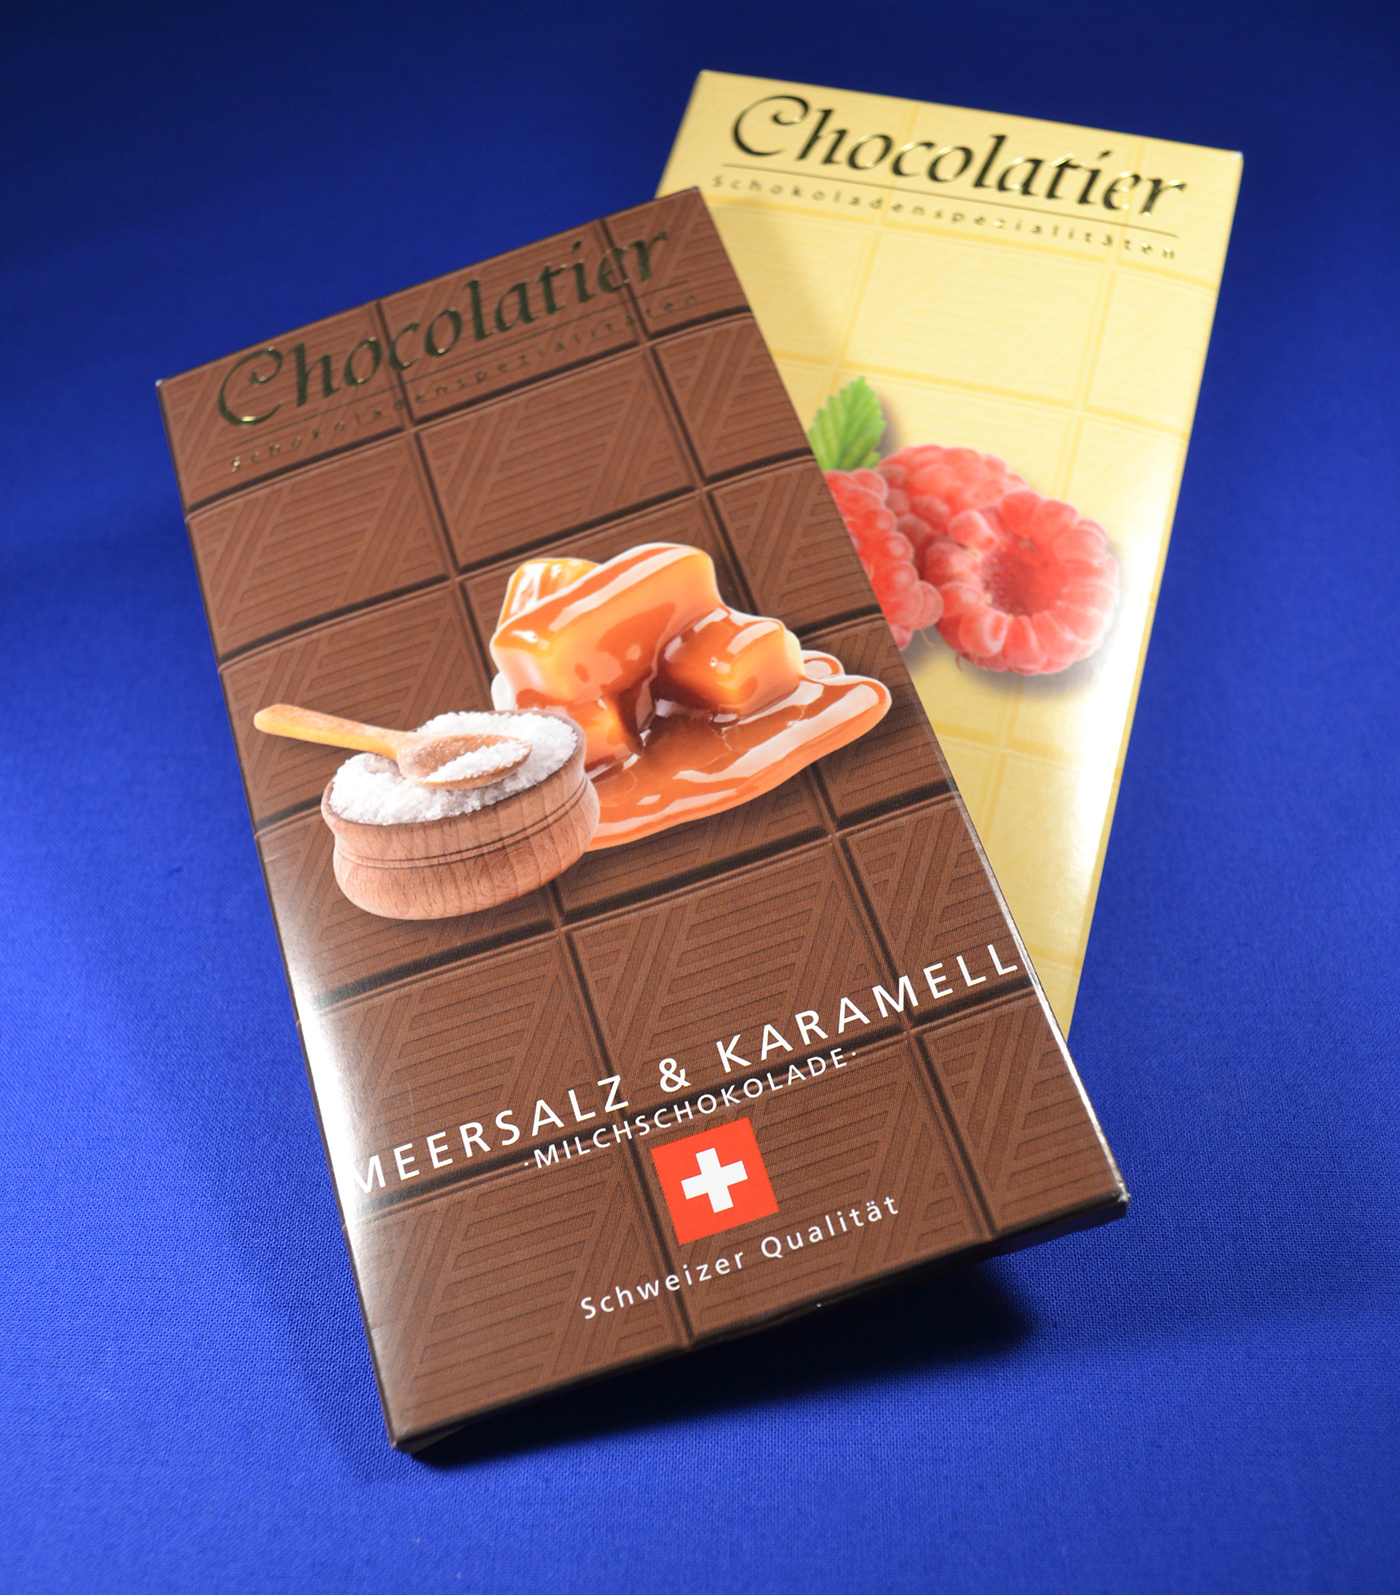 chocolate Schokolade verpackung weisse schokolade vollmilch schokolade dunkle schokolade  zitrone Himbeere minze Crainbery